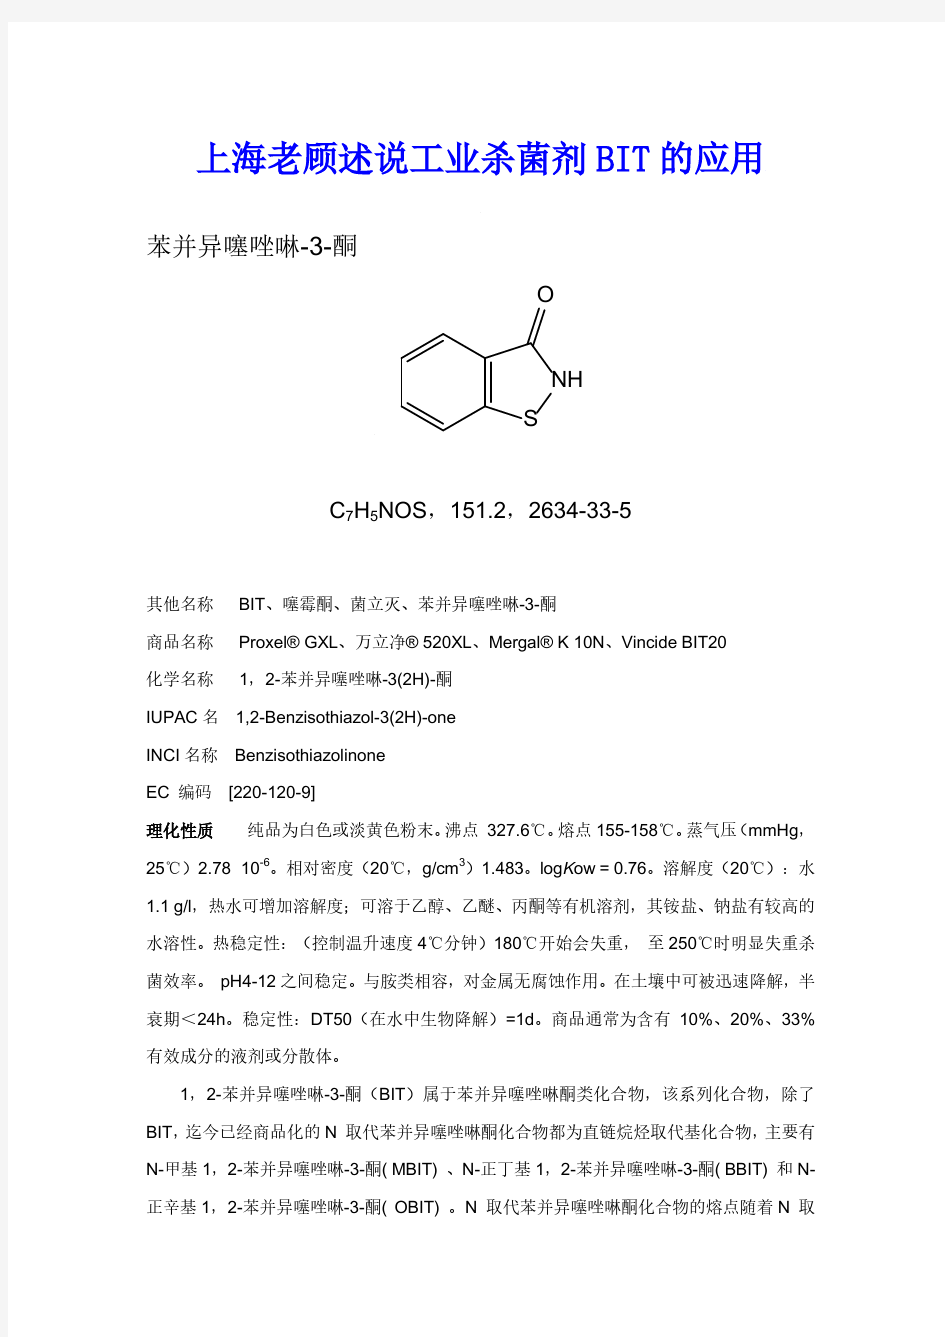 上海老顾述说工业杀菌剂BIT的应用